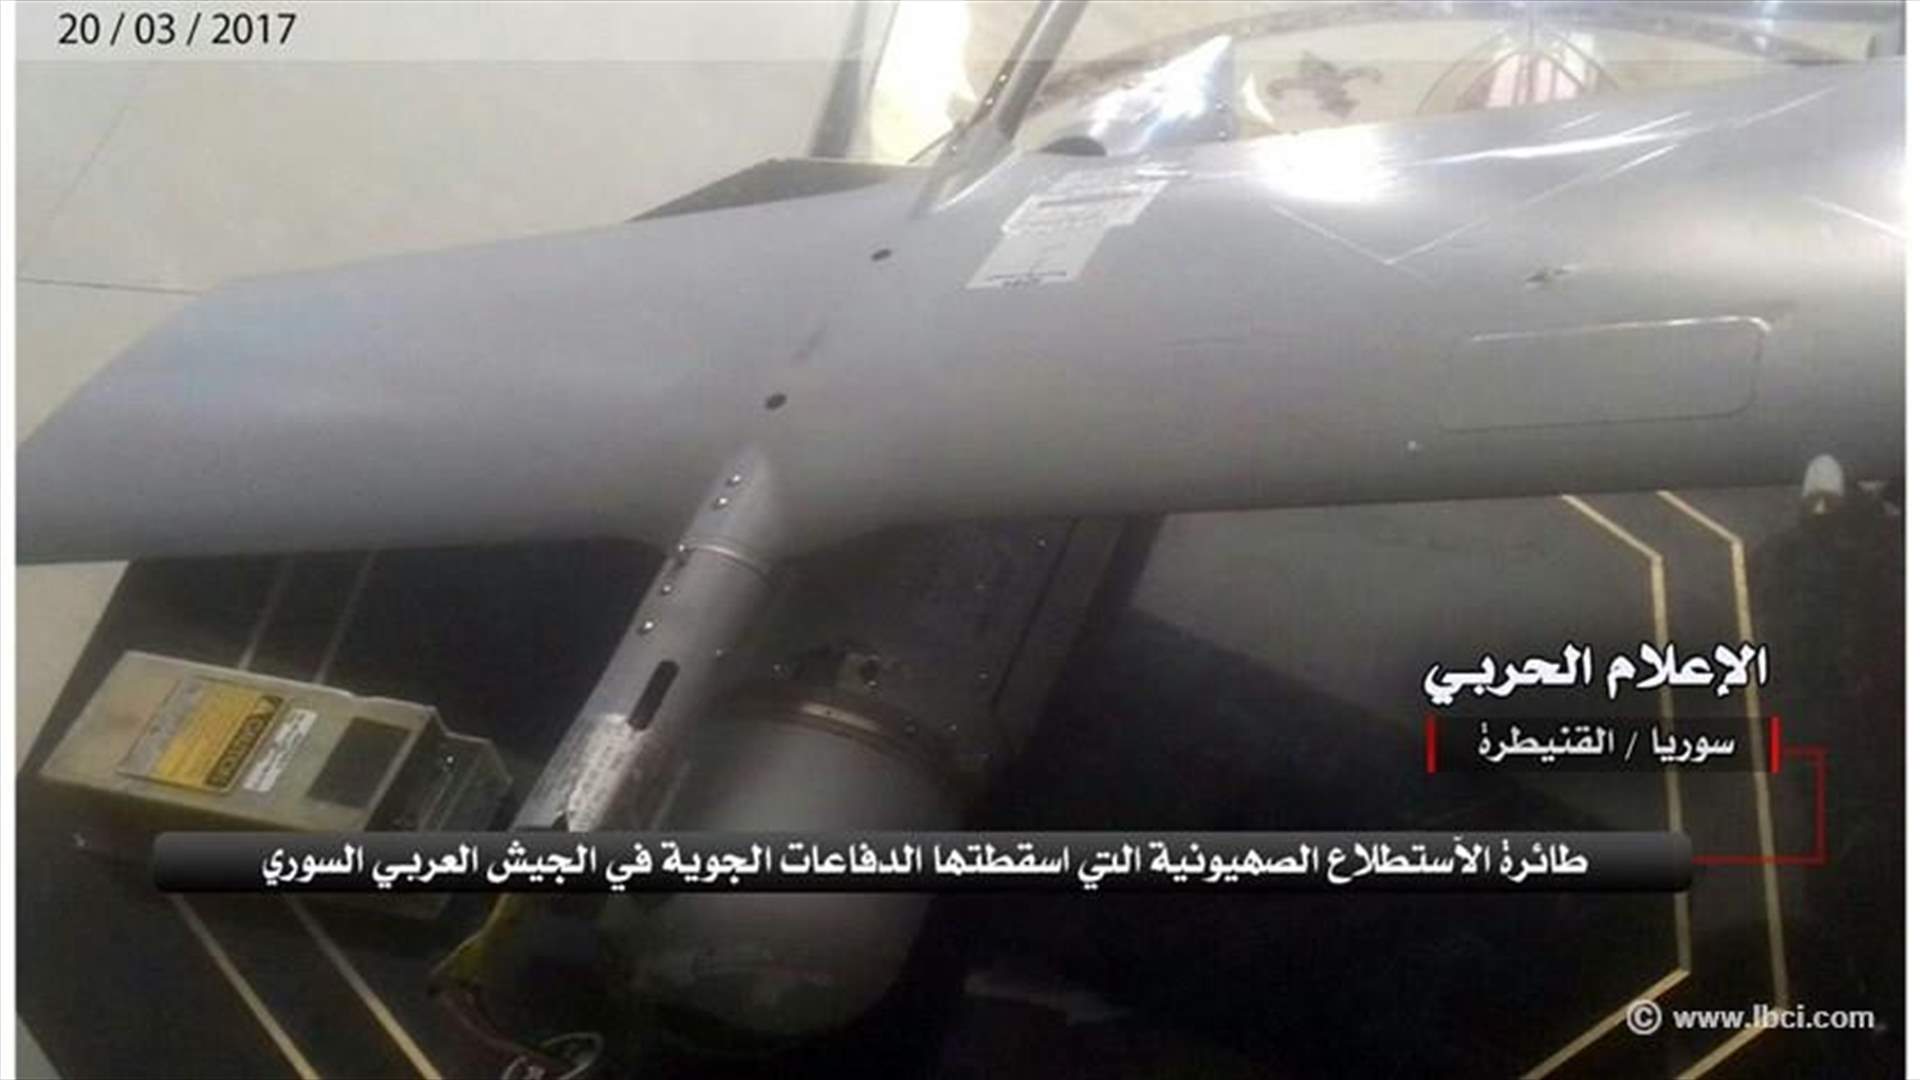 بالصور-  الجيش السوري يُسقط طائرة استطلاع اسرائيلية في ريف القنيطرة